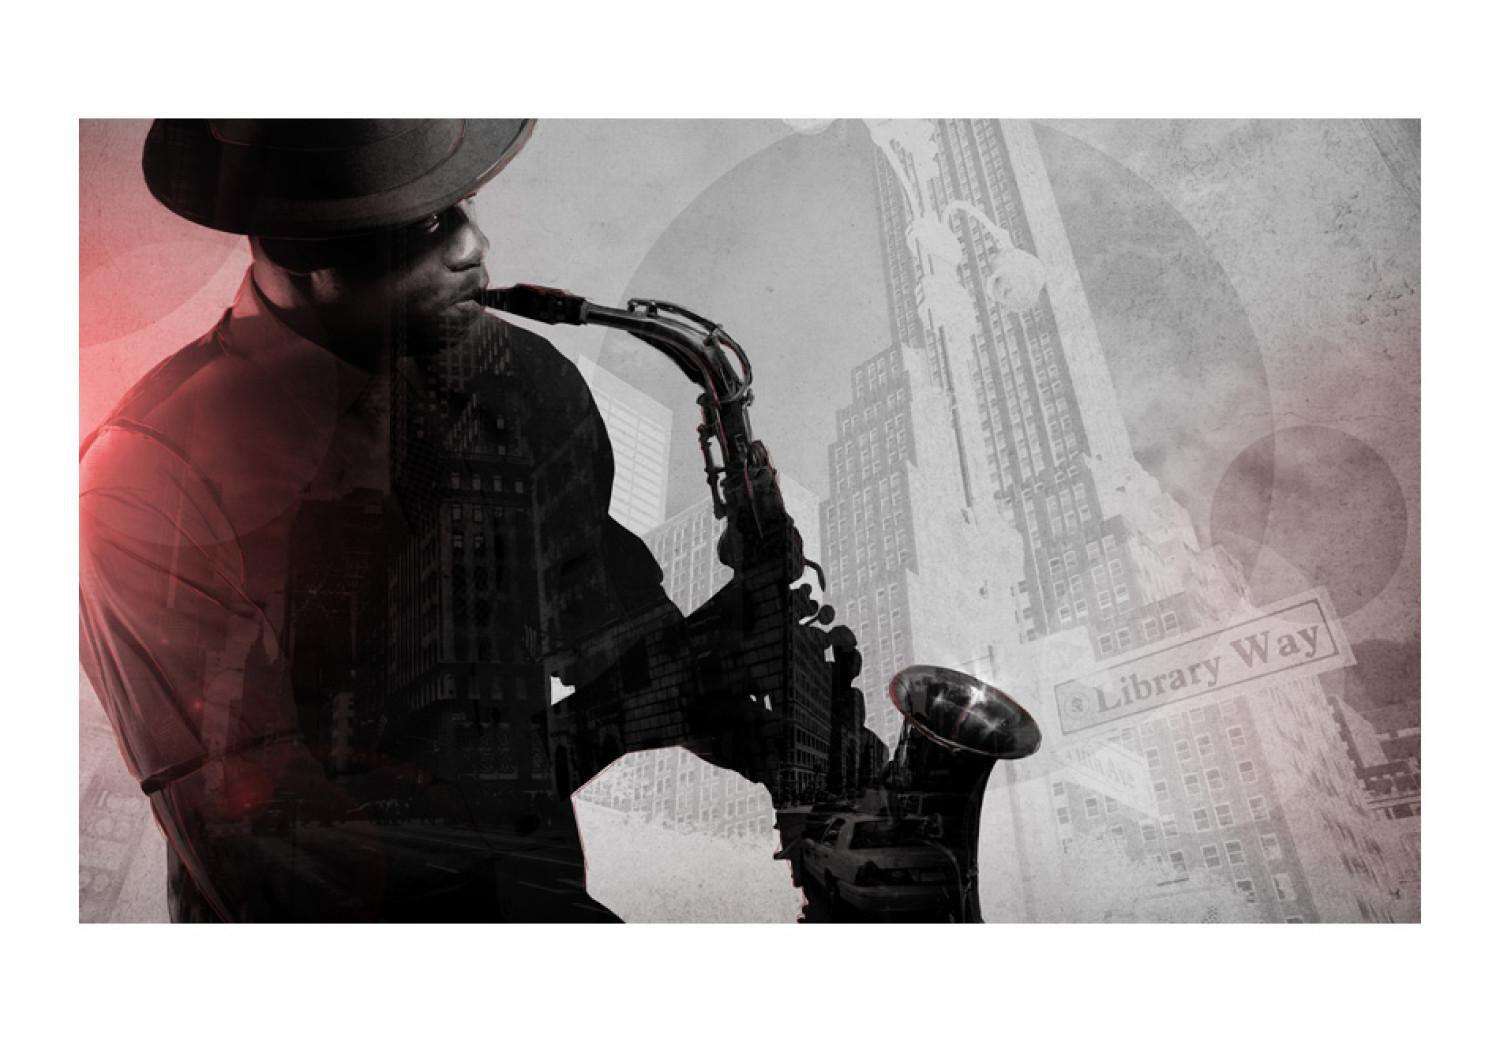 Fotomural Frontman - saxofonista con rascacielos de Nueva York de fondo